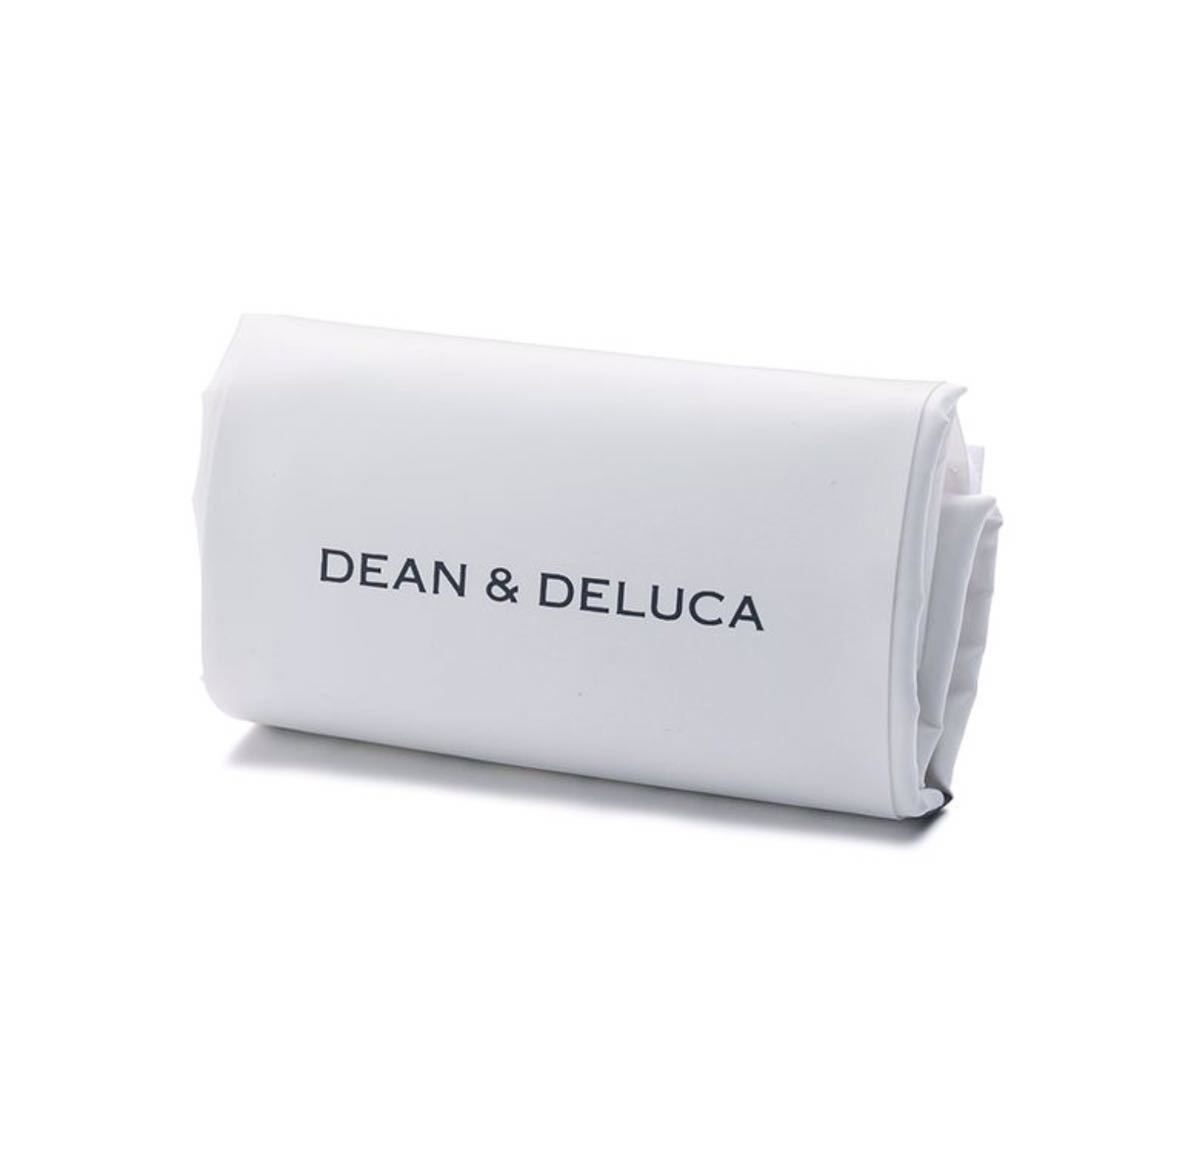 新品 2セット DEAN&DELUCA ディーンアンドデルーカ ミニマムエコバッグ 白色(ホワイト) 折りたたみ 軽量 コンパクト ショッピングバック